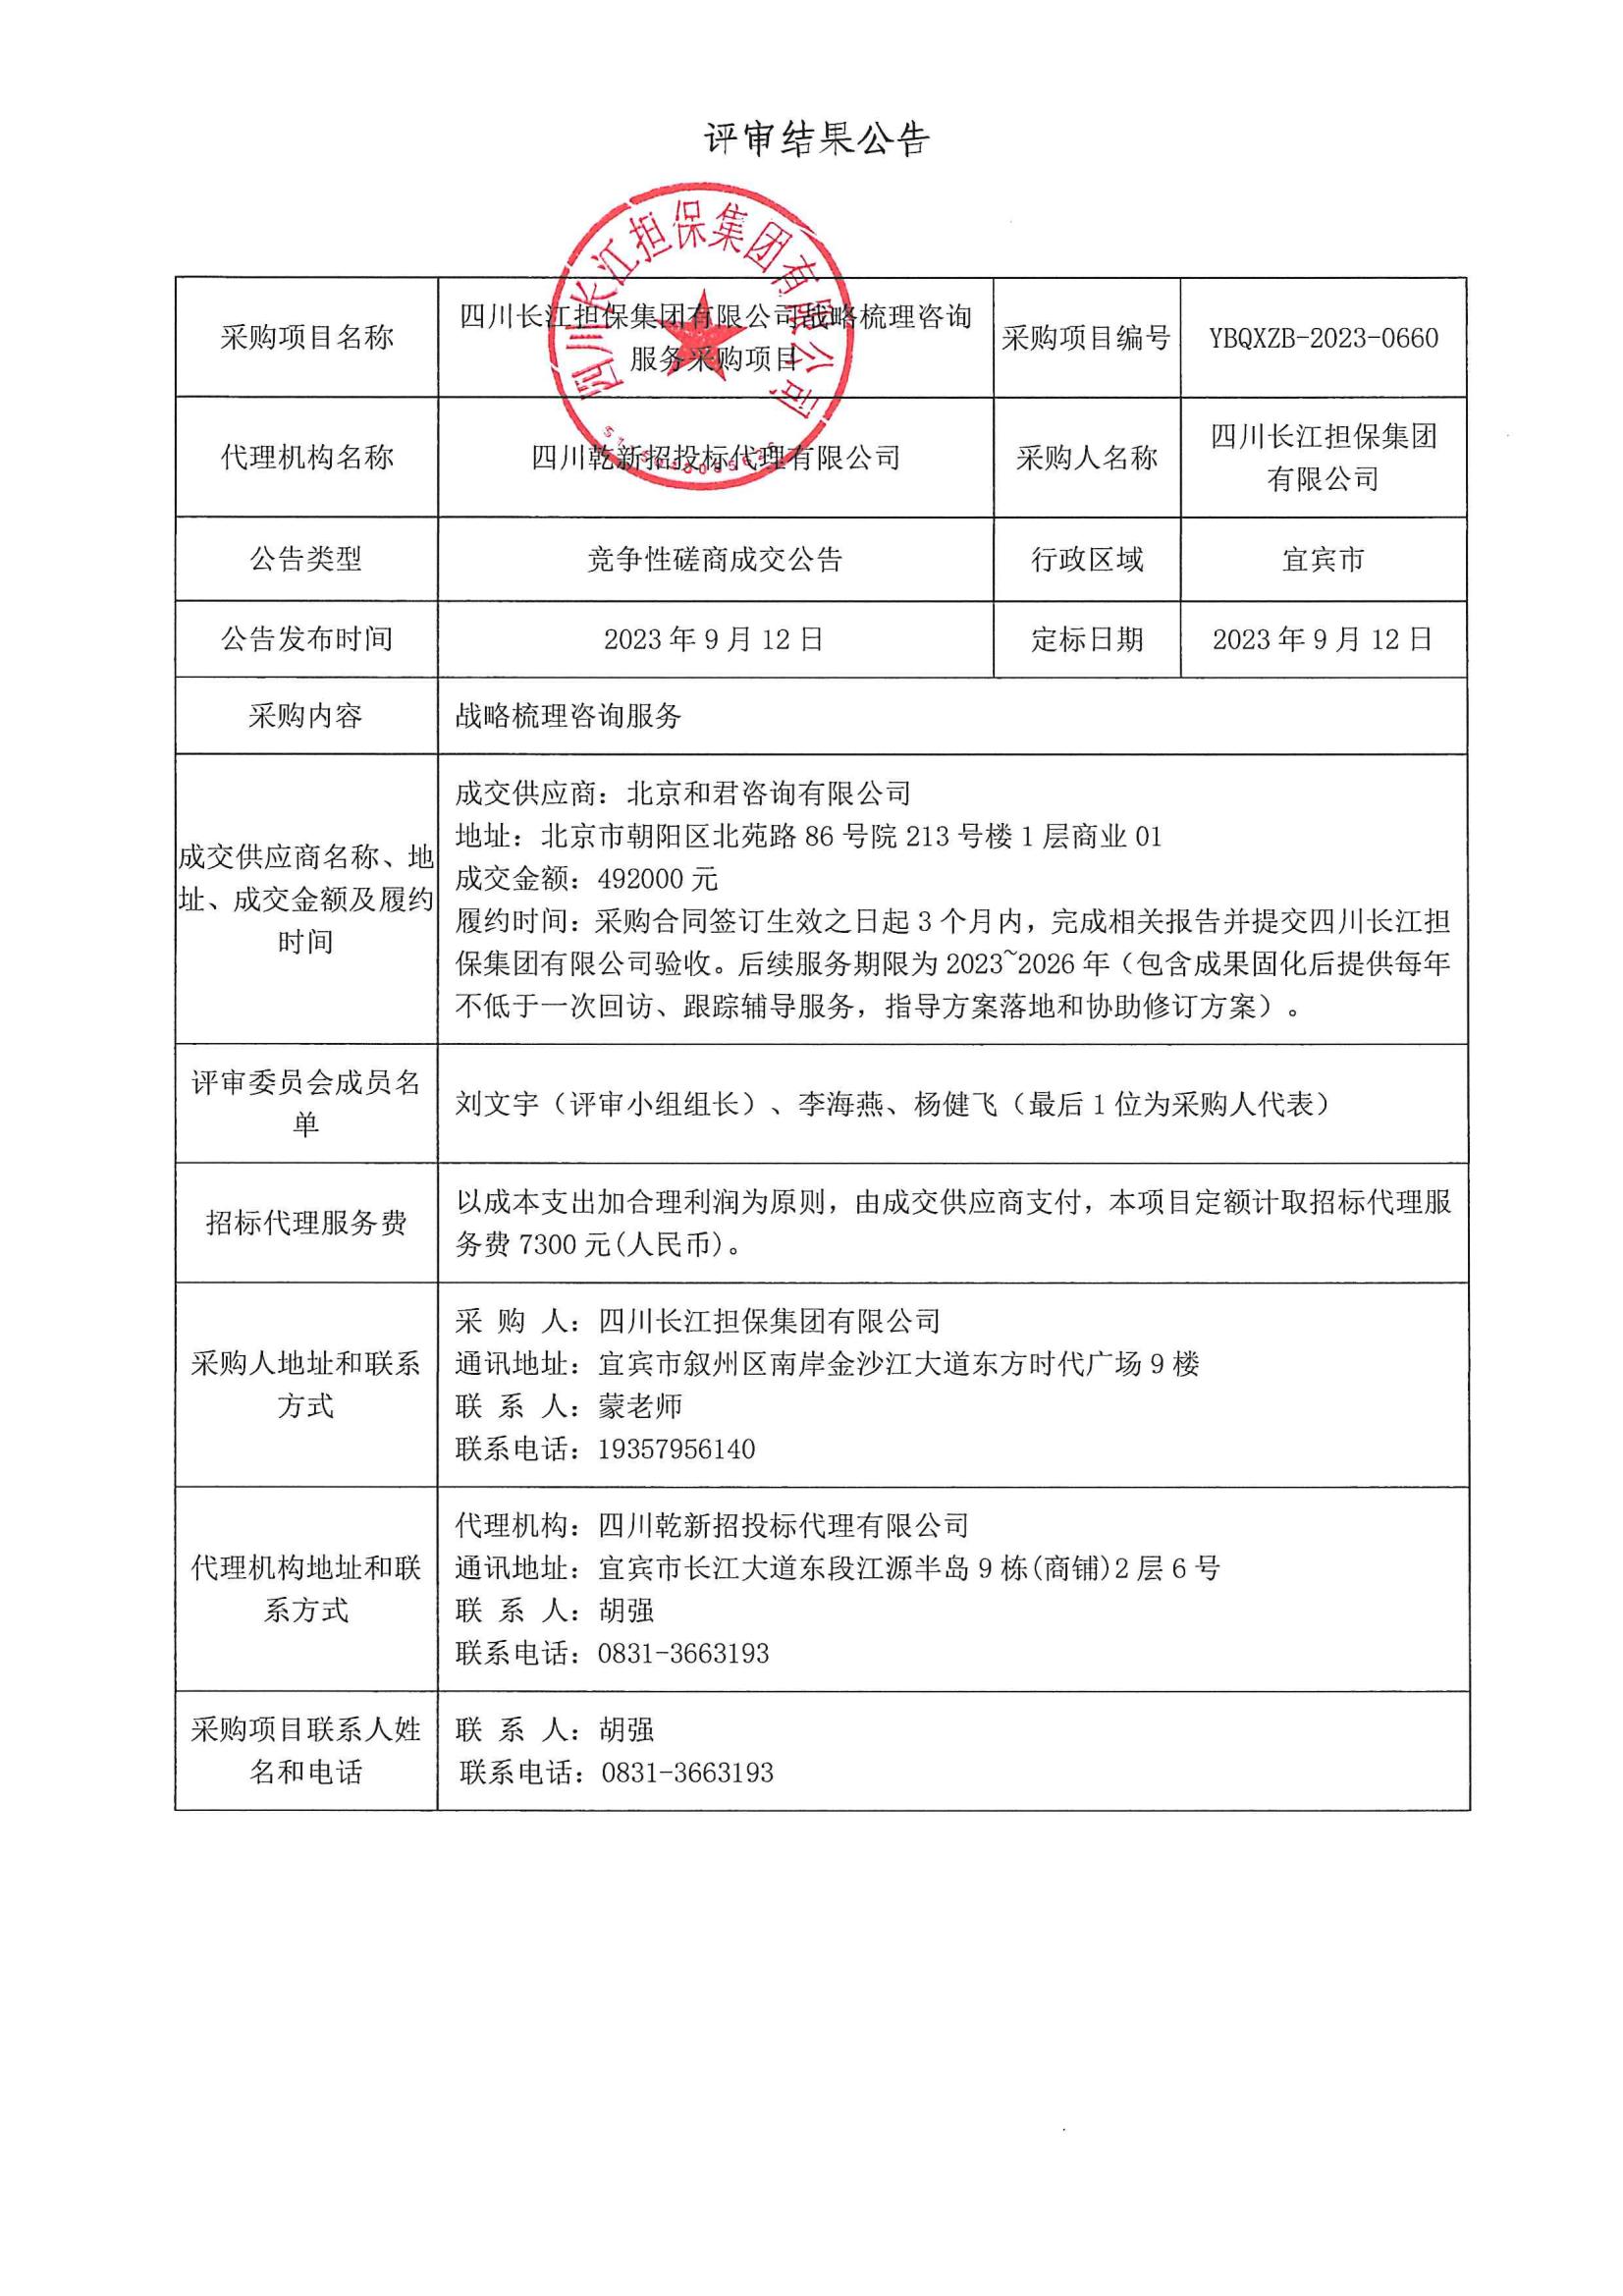 四川长江担保集团有限公司战略梳理咨询服务采购项目竞争性磋商结果公告(图1)